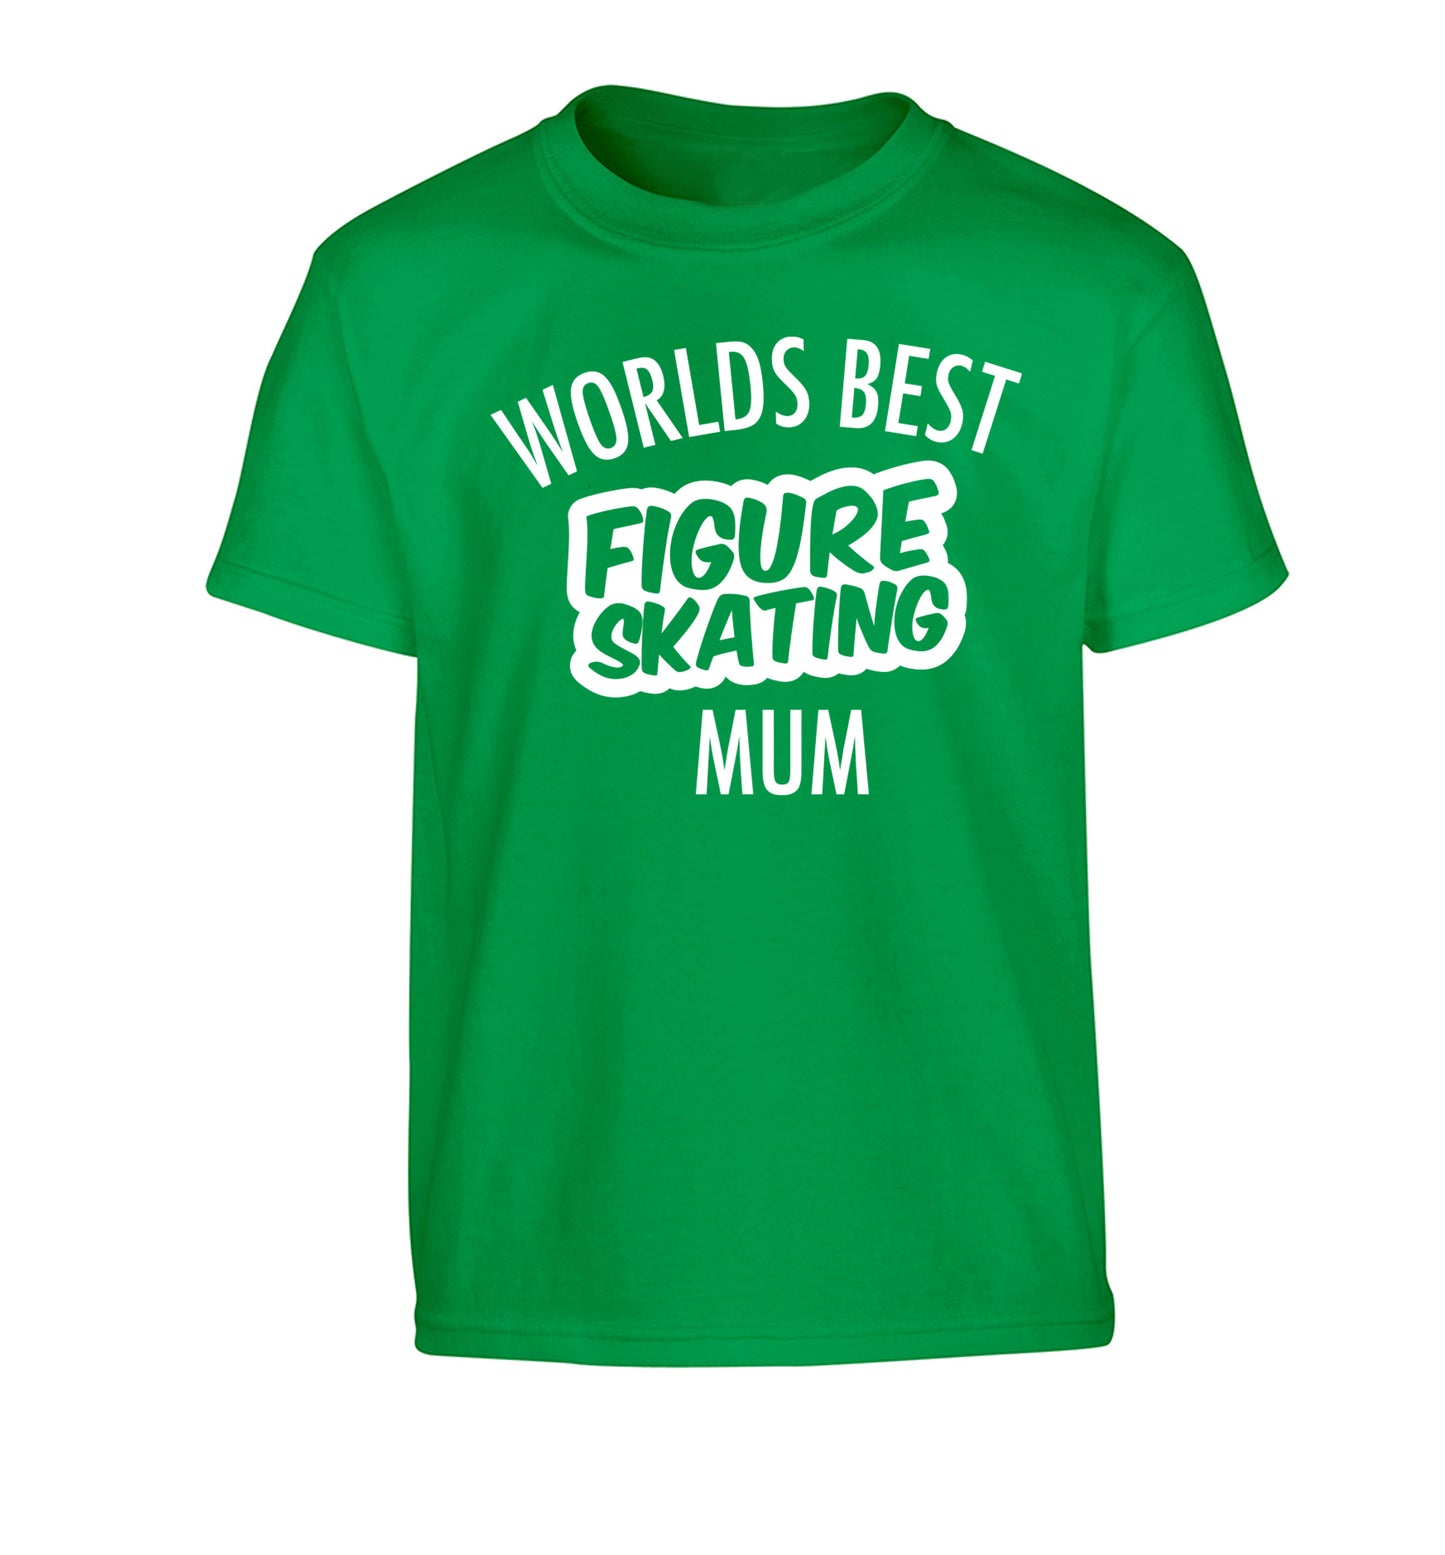 Worlds best figure skating mum Children's green Tshirt 12-14 Years